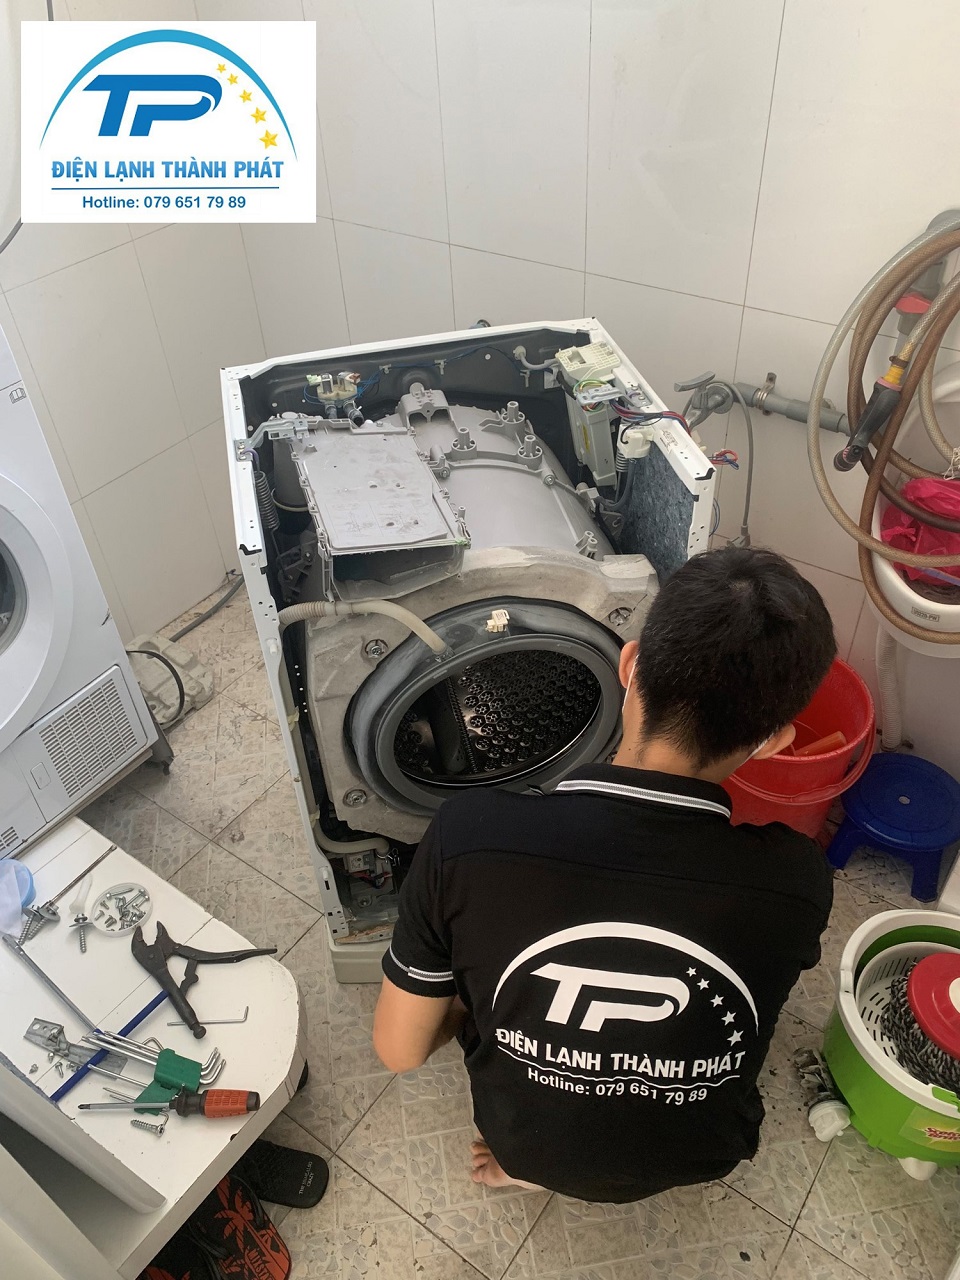 Nhân viên Thành Phát vệ sinh máy giặt tại nhà uy tín, đảm bảo chất lượng.